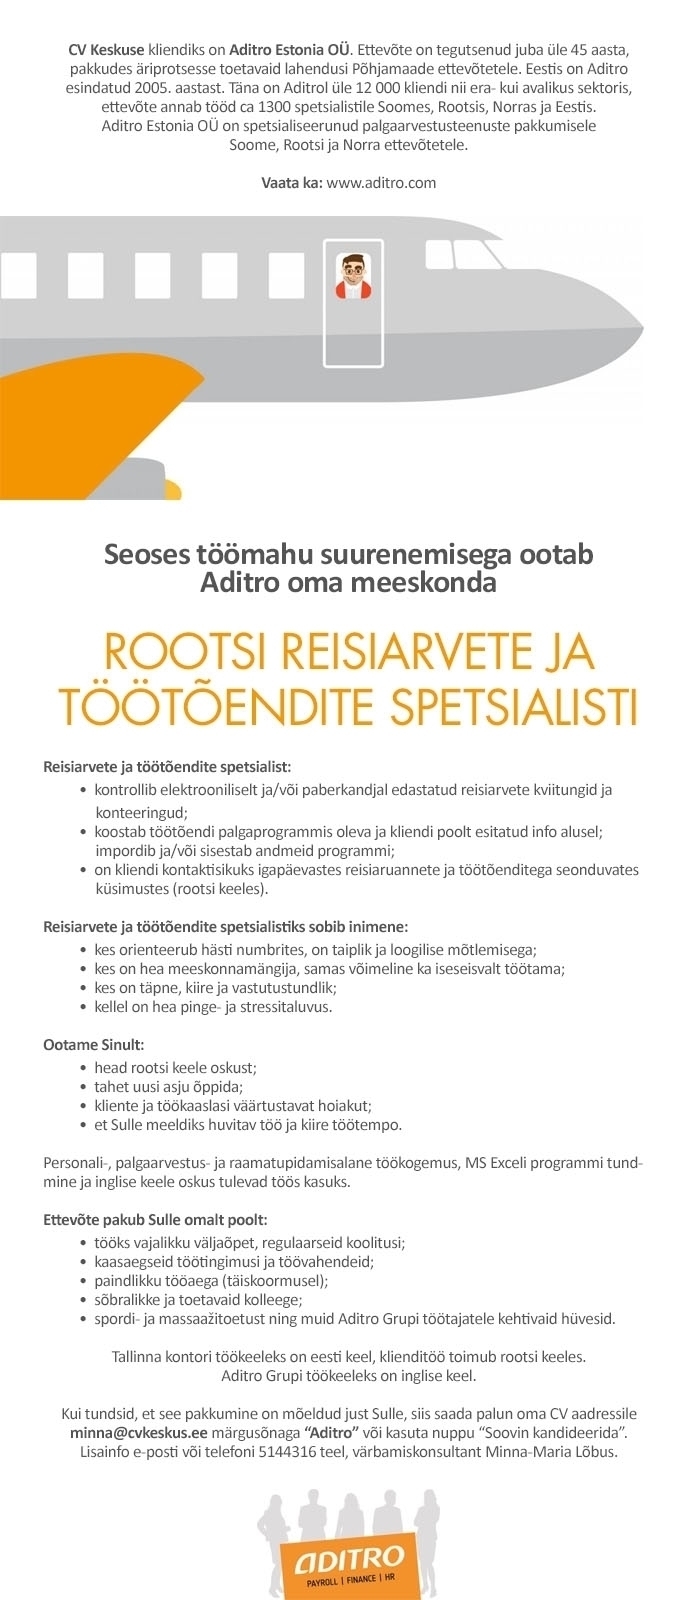 CV KESKUS OÜ Adrito Estonia OÜ otsib rootsi keele oskusega töötõendite ja reisiarvete spetsialisti